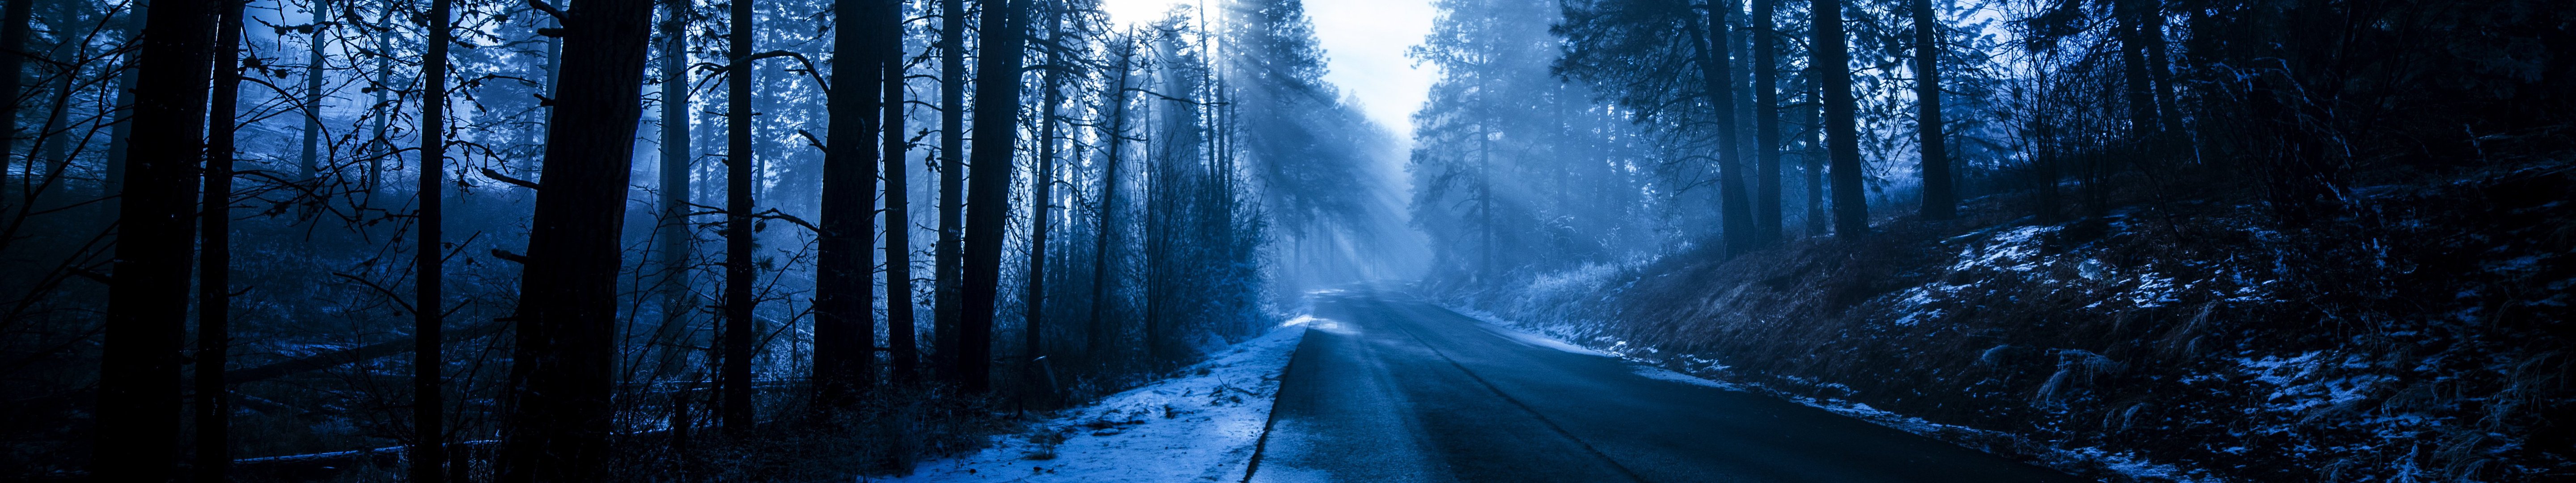 Đường phố mùa đông thật đẹp và đong đầy cảm xúc cùng với cây cối đắm chìm trong lớp tuyết trắng muốt. Hãy cùng chiêm ngưỡng hình ảnh này để cảm nhận được sự trầm lắng và thơ mộng của mùa đông đến từng con đường nhỏ.